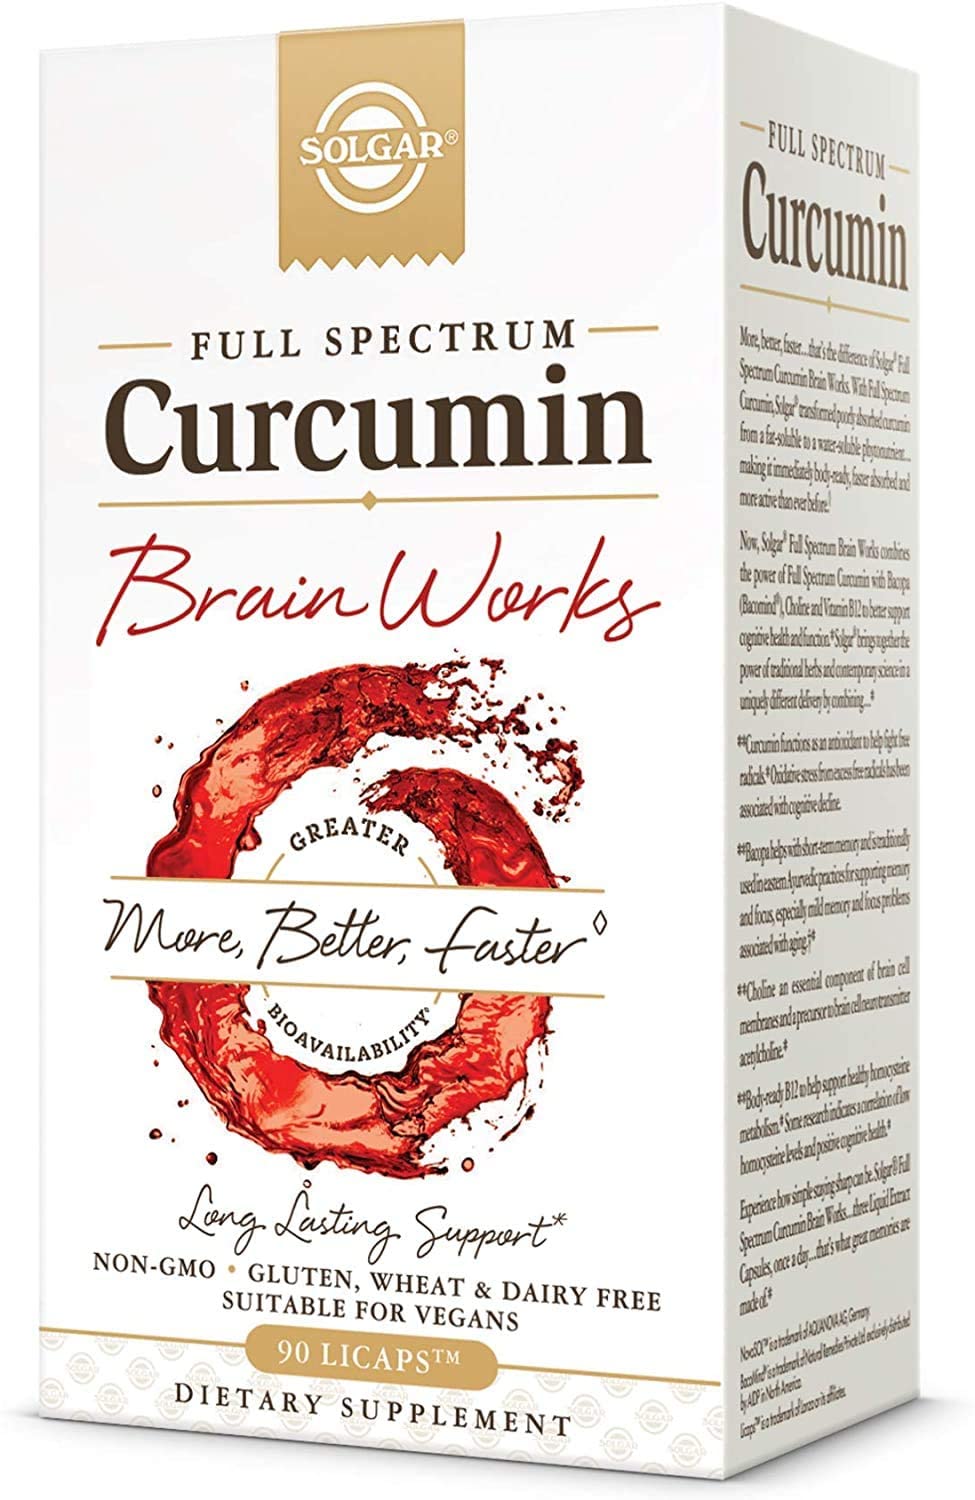 FULL SPECTRUM CURCUMIN BRAIN WORKS